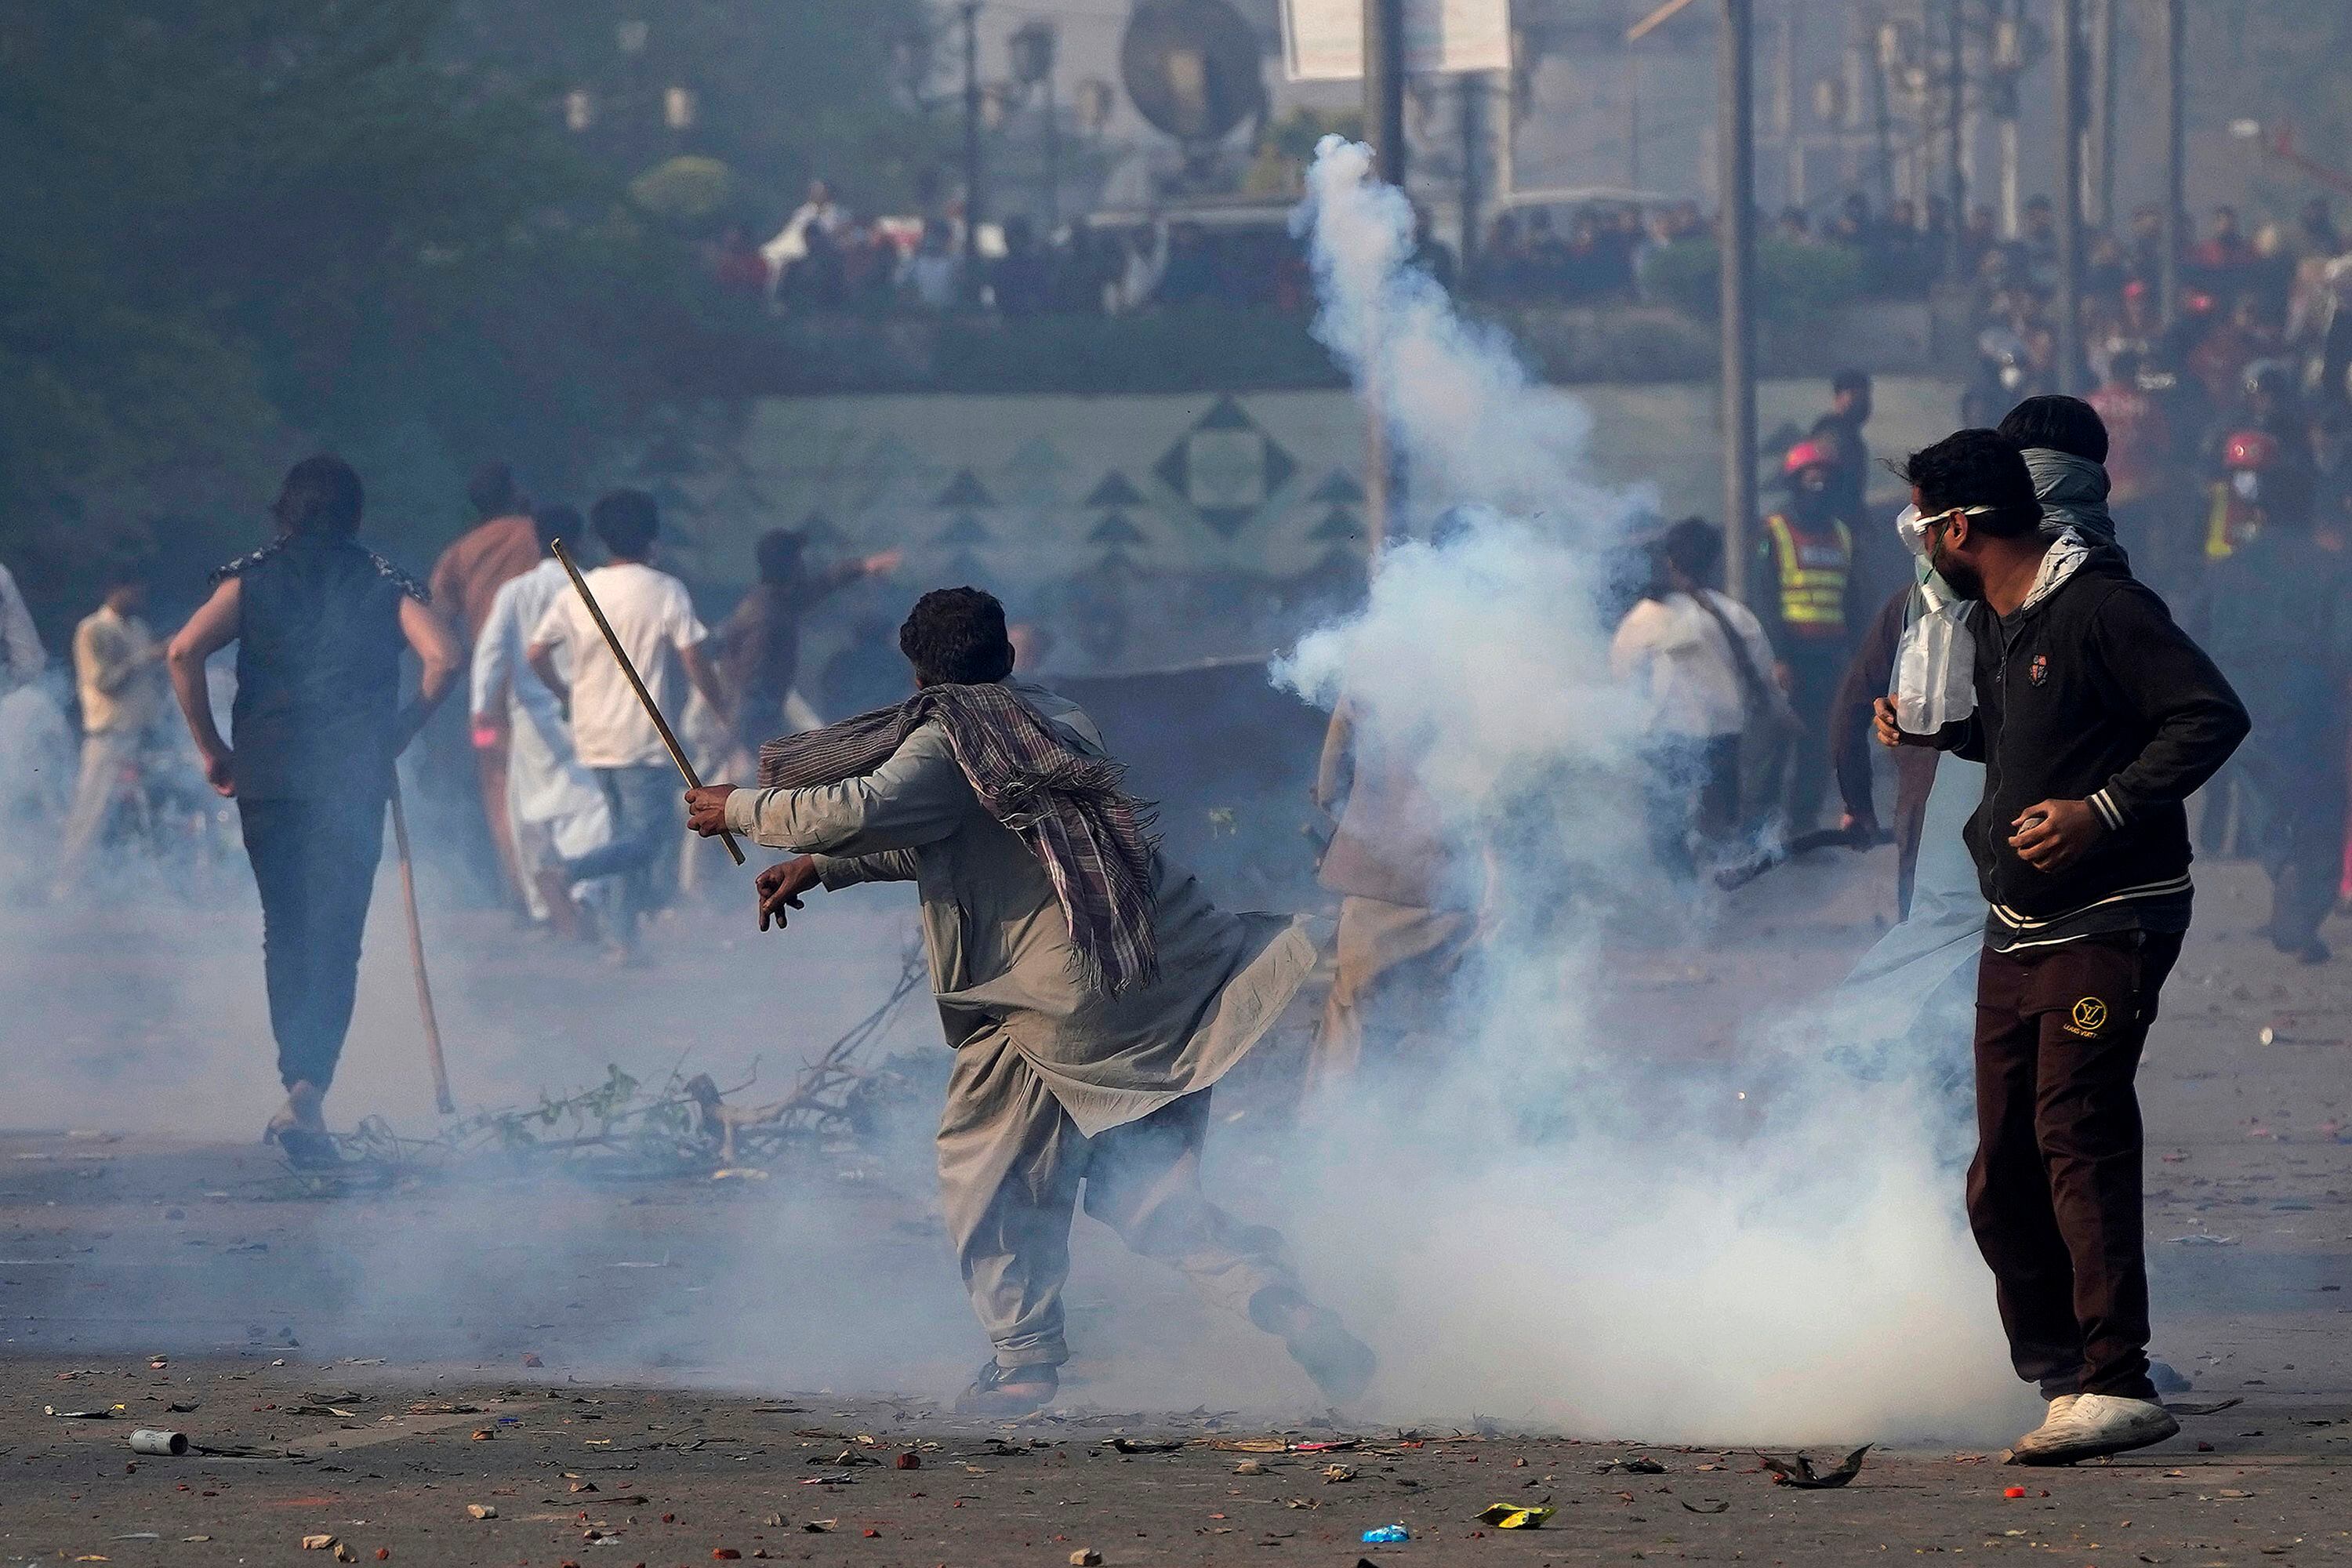 Un partidario del exprimer ministro de Pakistán Imran Khan lanza de vuelta una lata de gas lacrimógeno empleada por agentes de policía antimotines para dispersar a la multitud, durante enfrentamientos entre policía paquistaní y defensores de Khan en la ciudad natal del exmandatario, Lahore, el miércoles 15 de marzo de 2023. La policía intentó detener a Khan el día anterior por no comparecer ante una corte para responder de acusaciones de corrupción. (AP Foto/K.M. Chaudary)